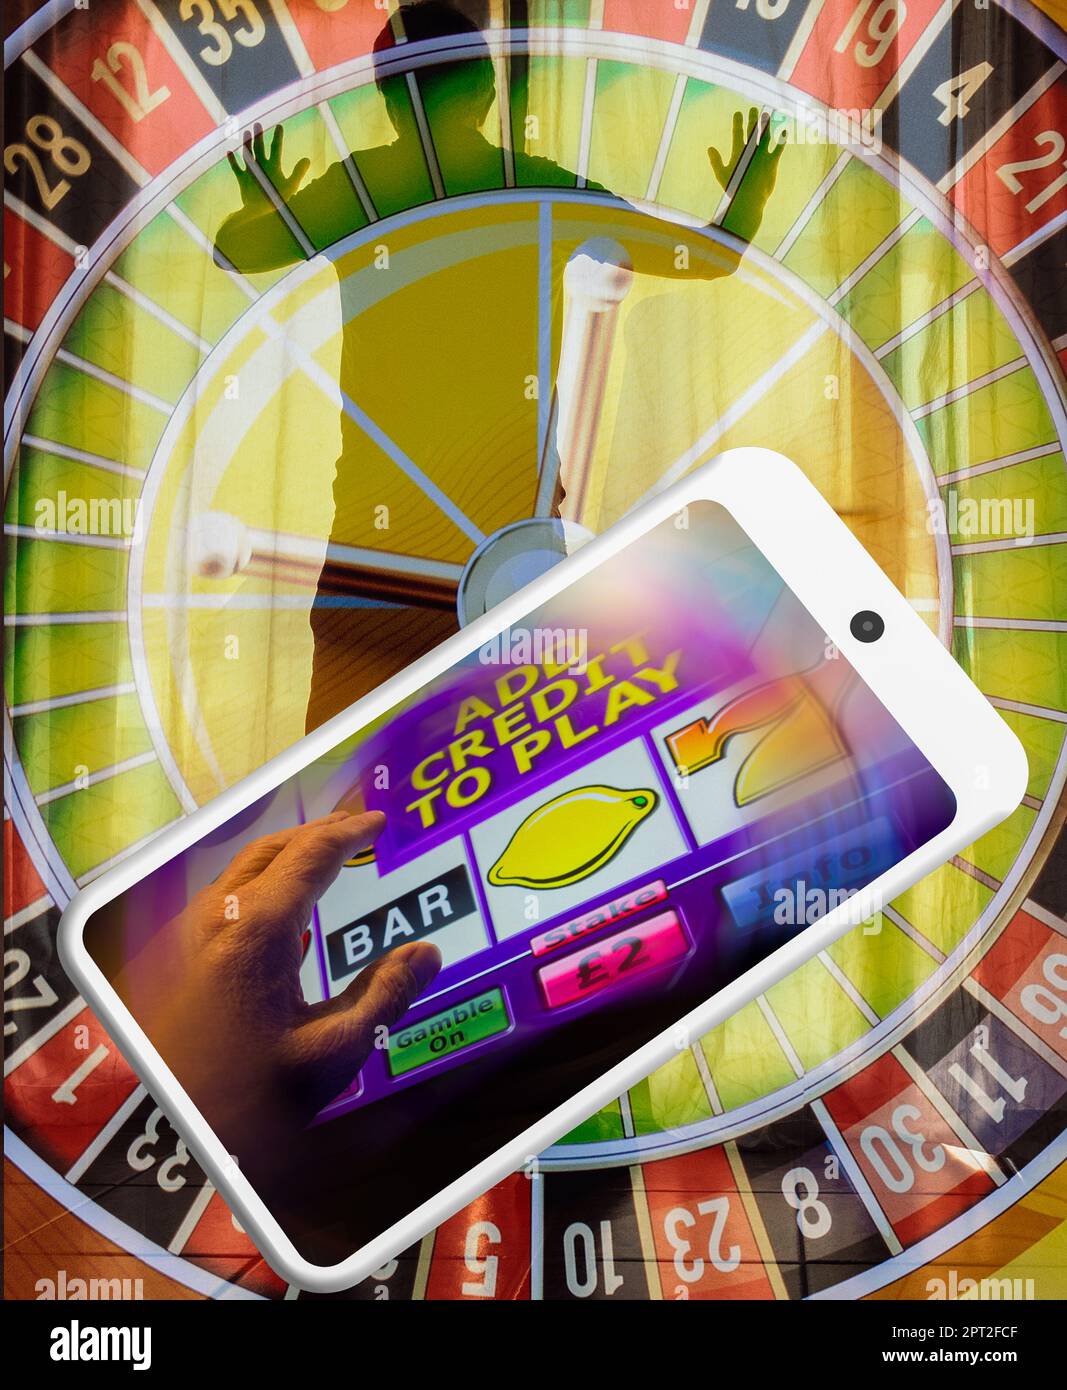 Telefono moblie con slot machine. Gioco d'azzardo online, scommesse, dipendenza da gioco d'azzardo, salute mentale, debito. concetto. Foto Stock